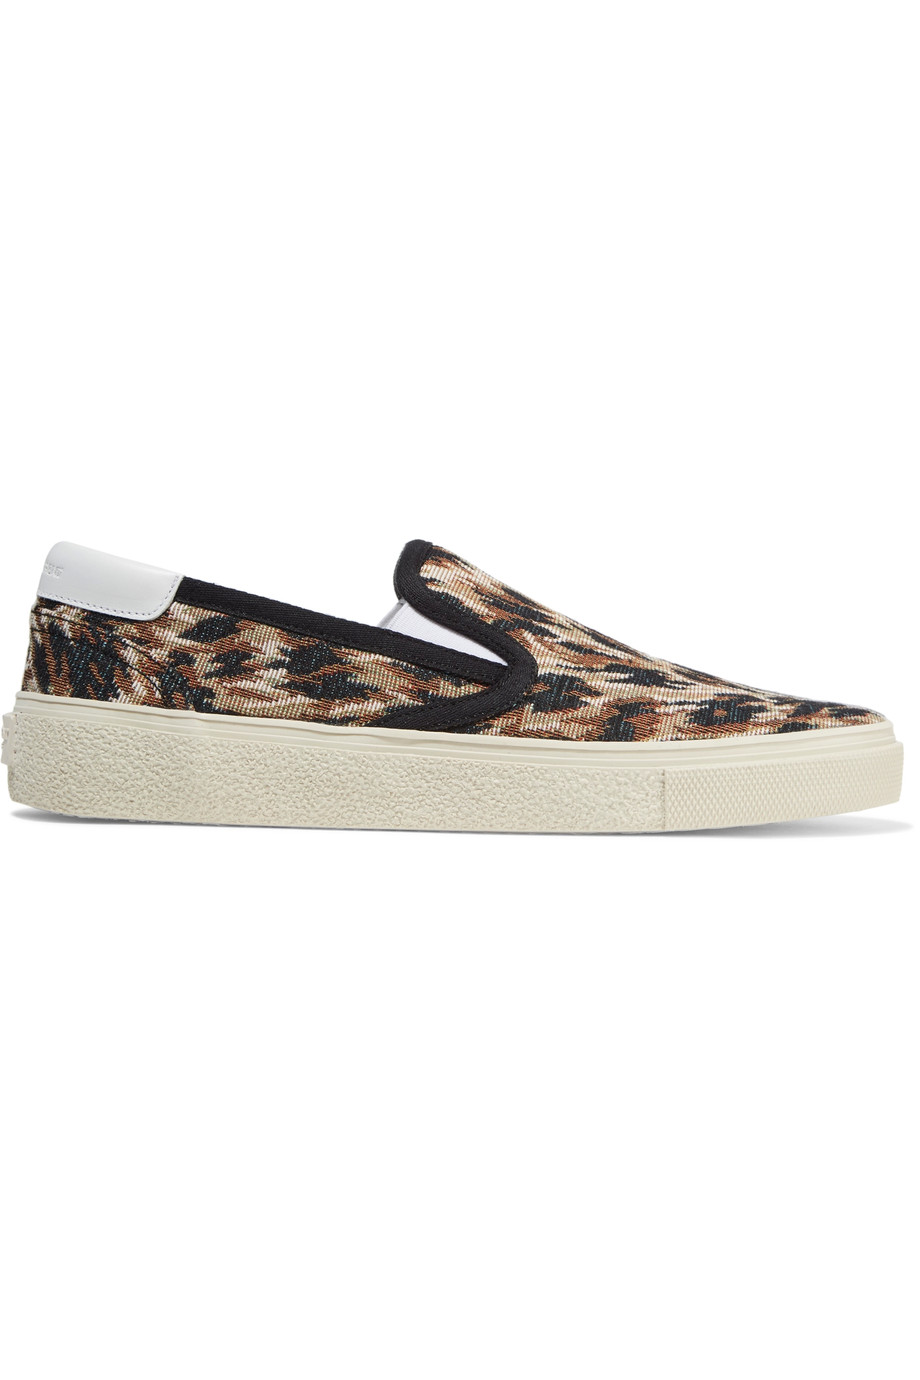 Saint Laurent Leopard-print Jacquard Sneakers | ModeSens